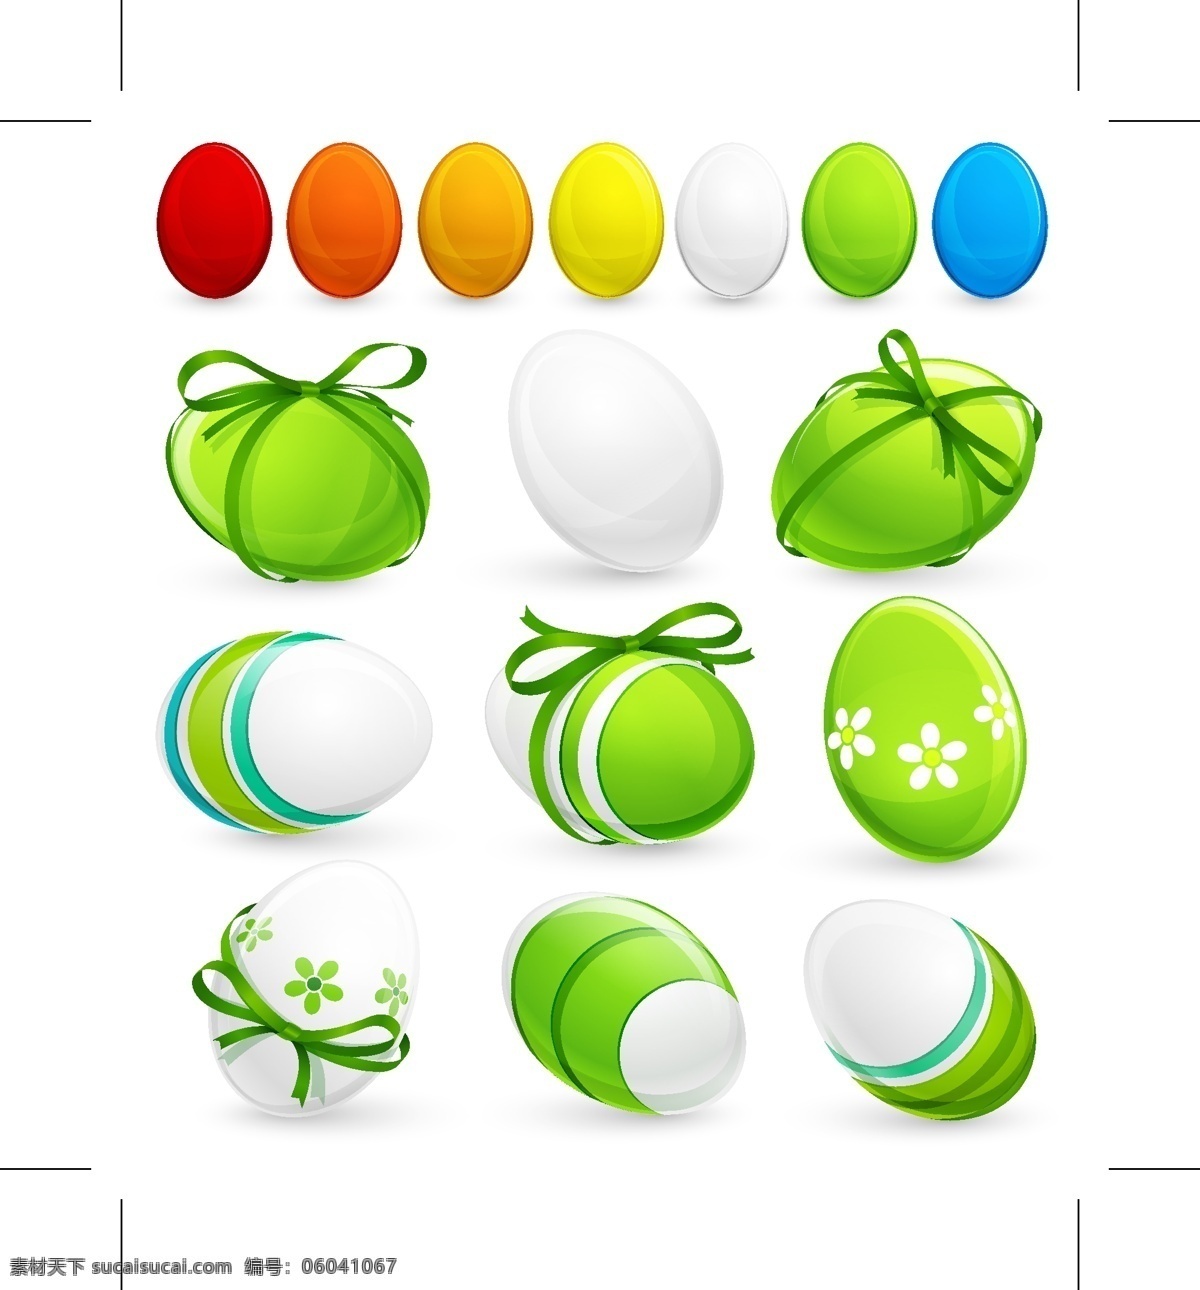 复活节 缤纷 彩蛋 矢量 彩条 花纹 鸡蛋 矢量图 丝带 装饰 节日素材 其他节日